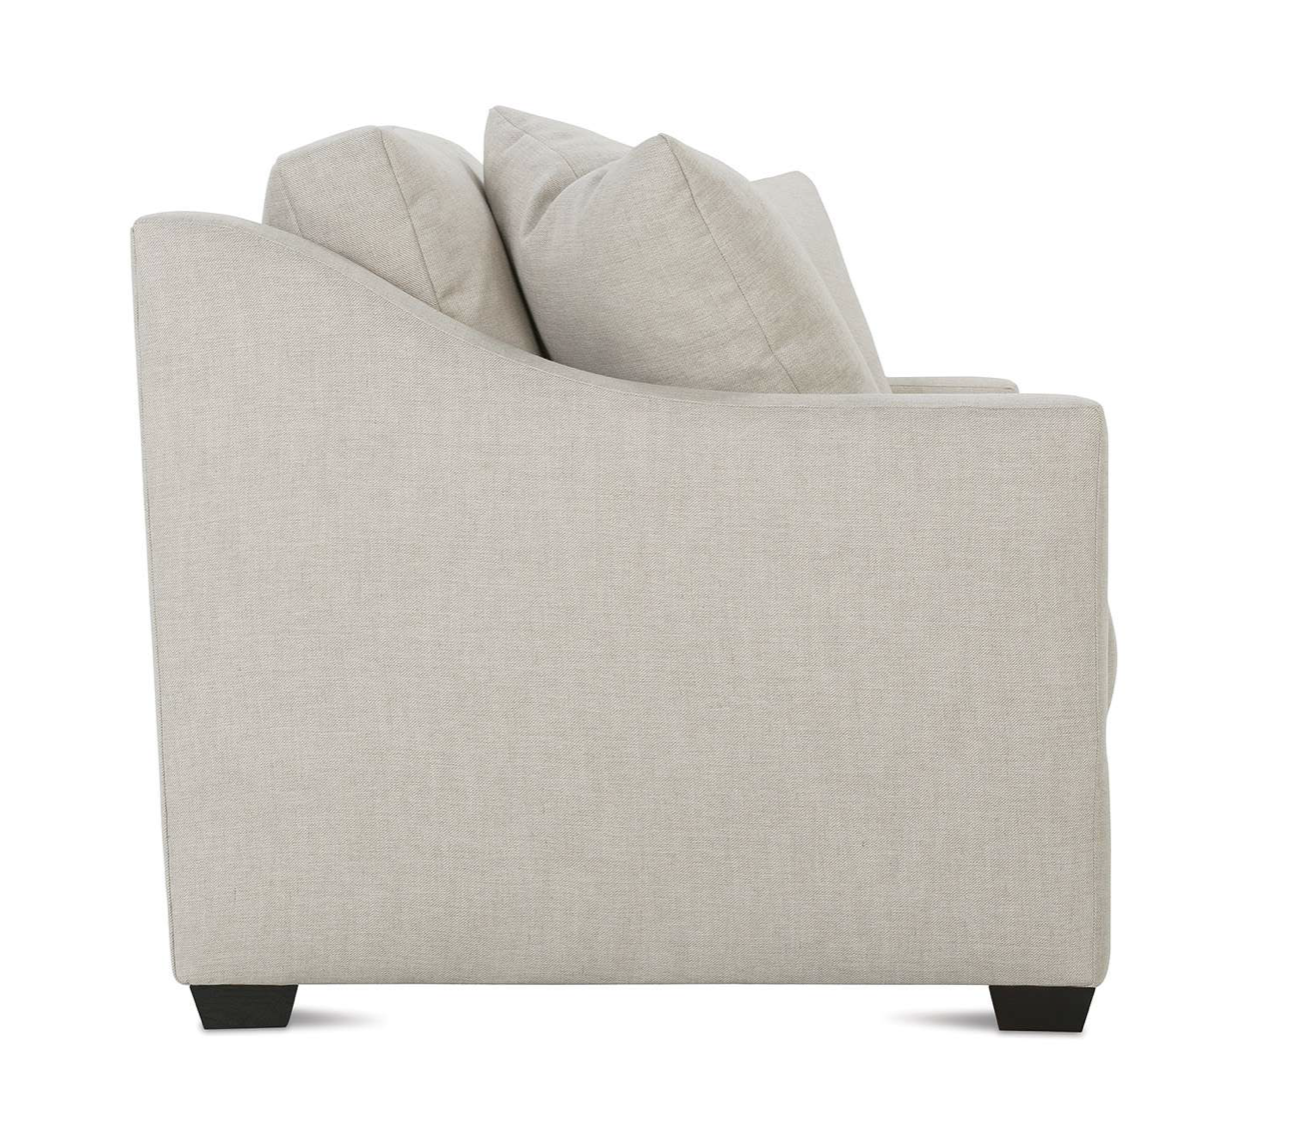 Sam 2 cushion 88" Sofa